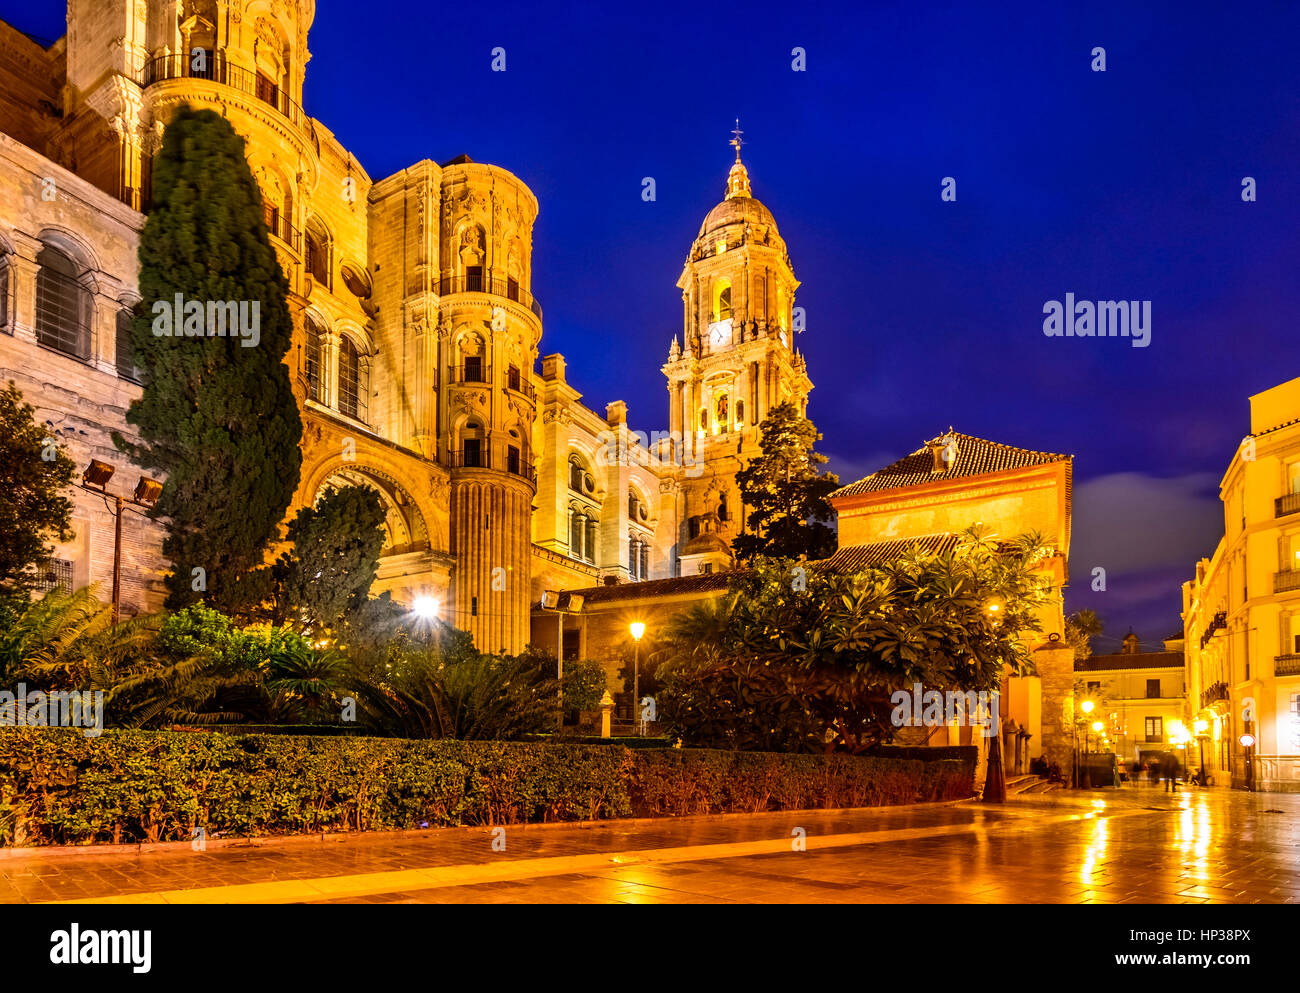 Die Kathedrale von Málaga ist eine Renaissance Kirche zwischen 1528 und 1782 errichtet. Malaga, Spanien. Stockfoto